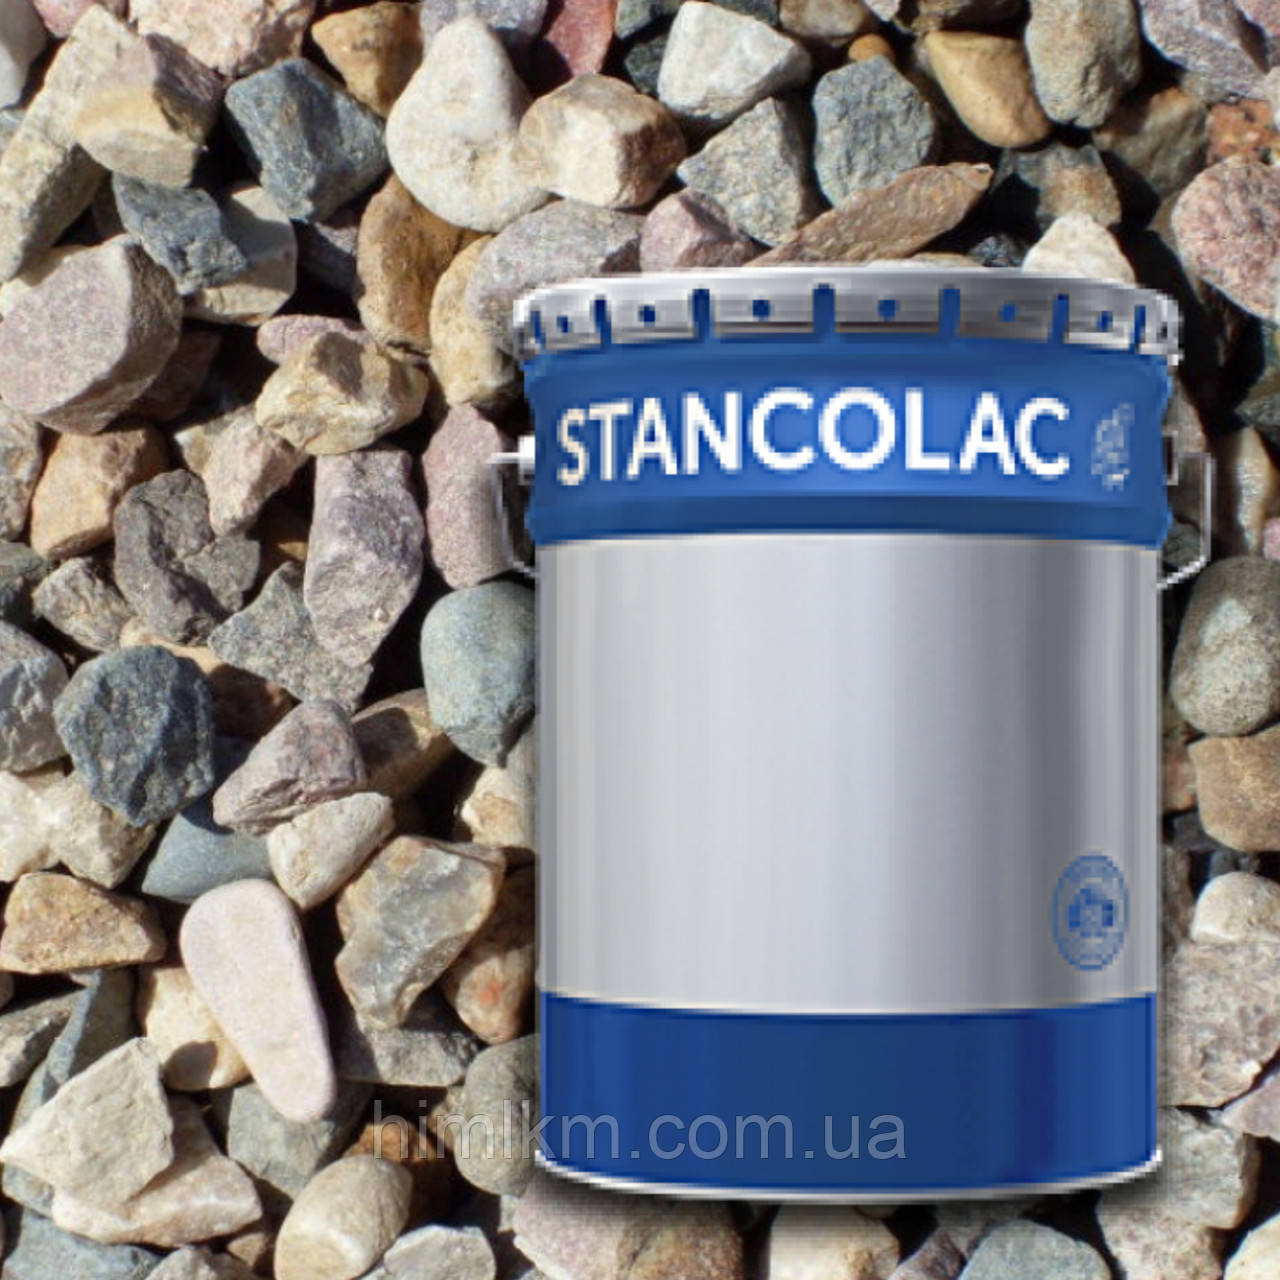 Фарба для бетонних підлог, каменю, щебеню, нанесення розмітки Станколак 555 Stancoroad, 25кг